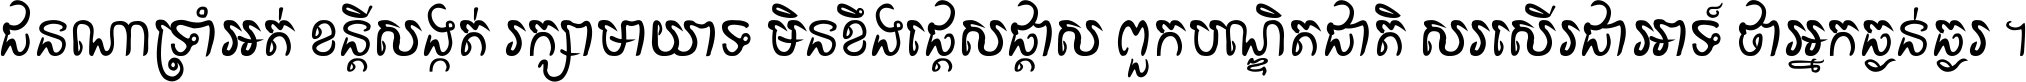 Khmer P Doun-teav